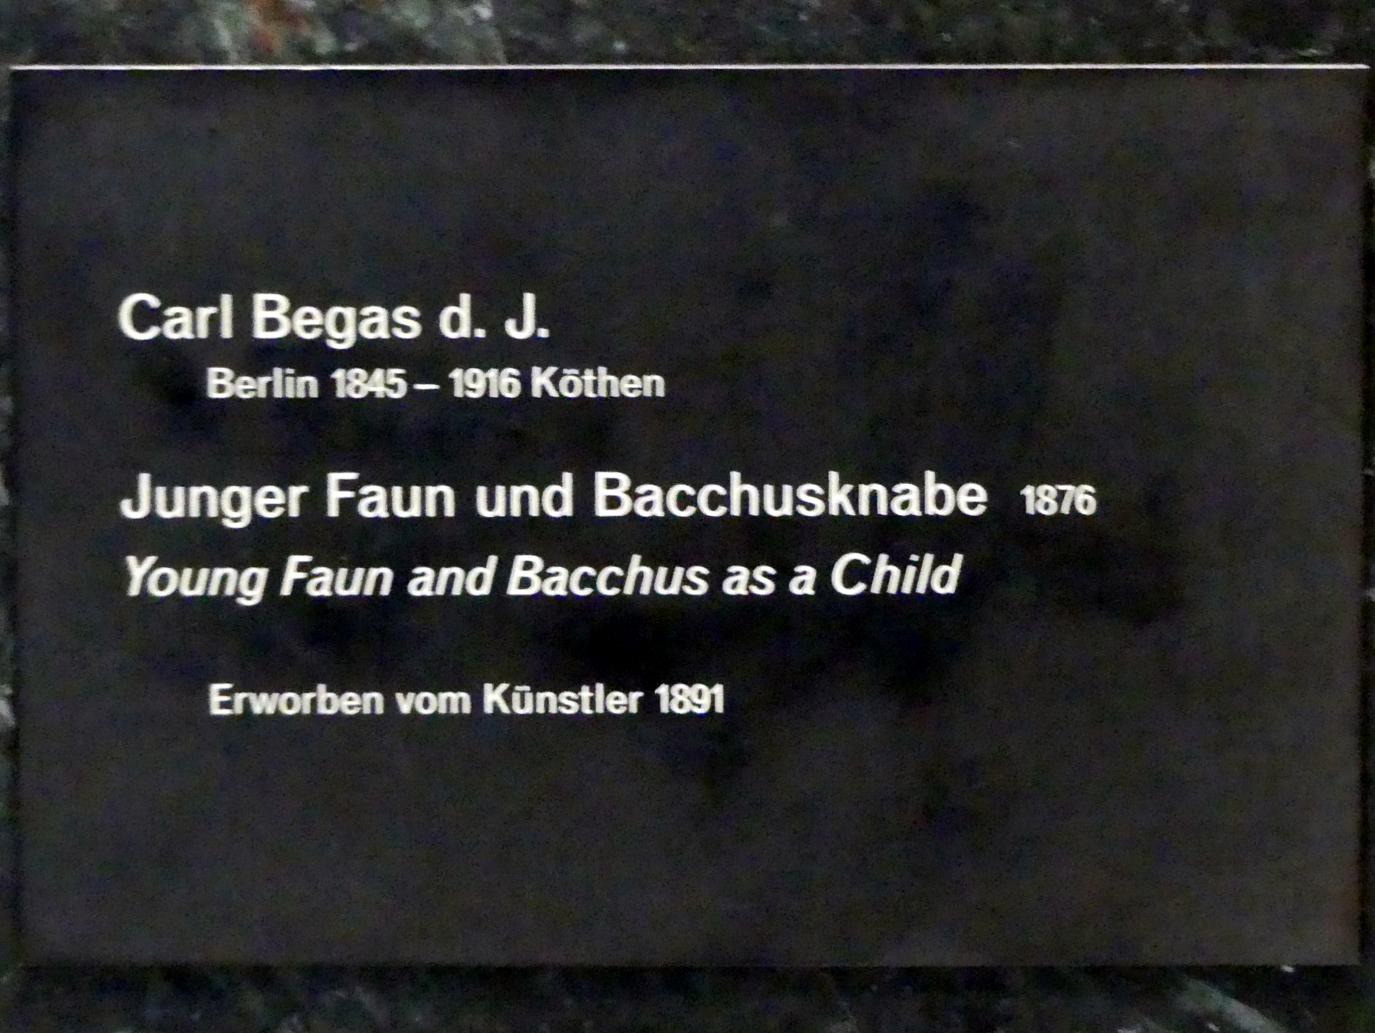 Karl Begas (1876), Junger Faun und Bacchusknabe, Berlin, Alte Nationalgalerie, Saal 201, Skulpturen von Reinhold und Karl Begas, 1876, Bild 2/2